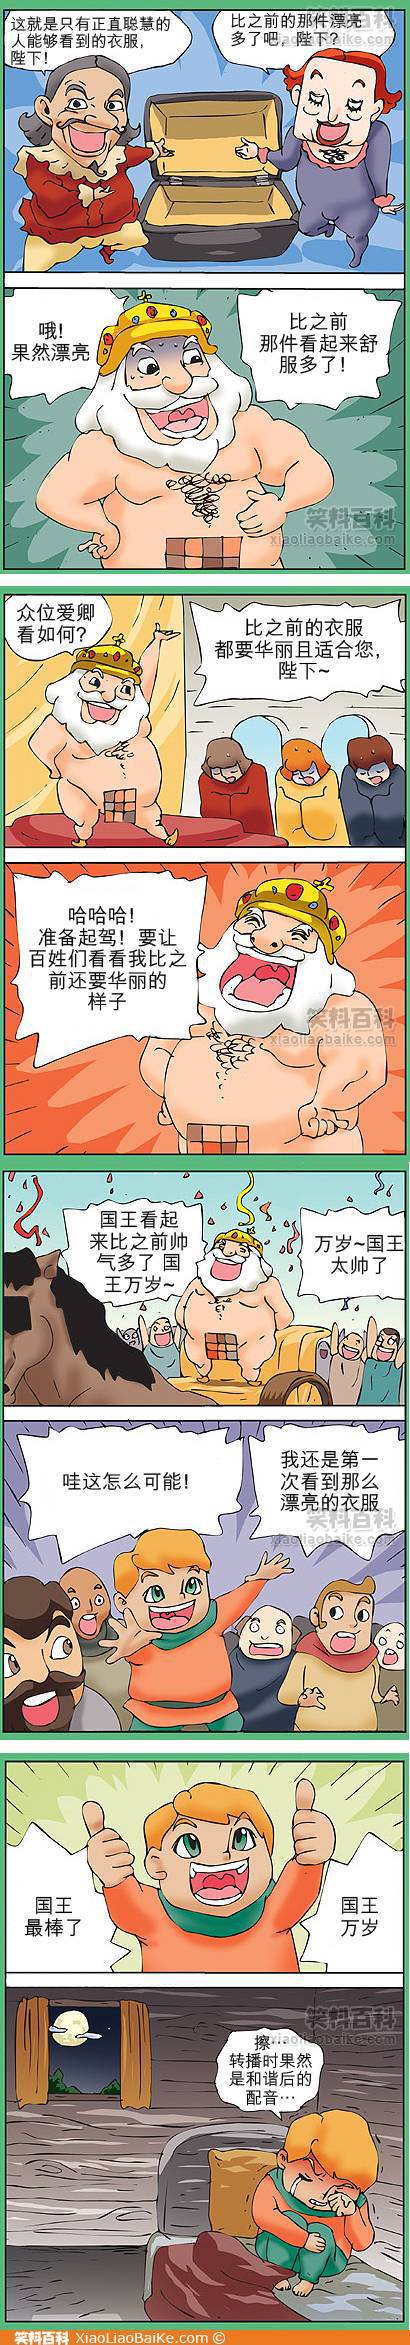 邪恶漫画爆笑囧图第65刊：逃跑